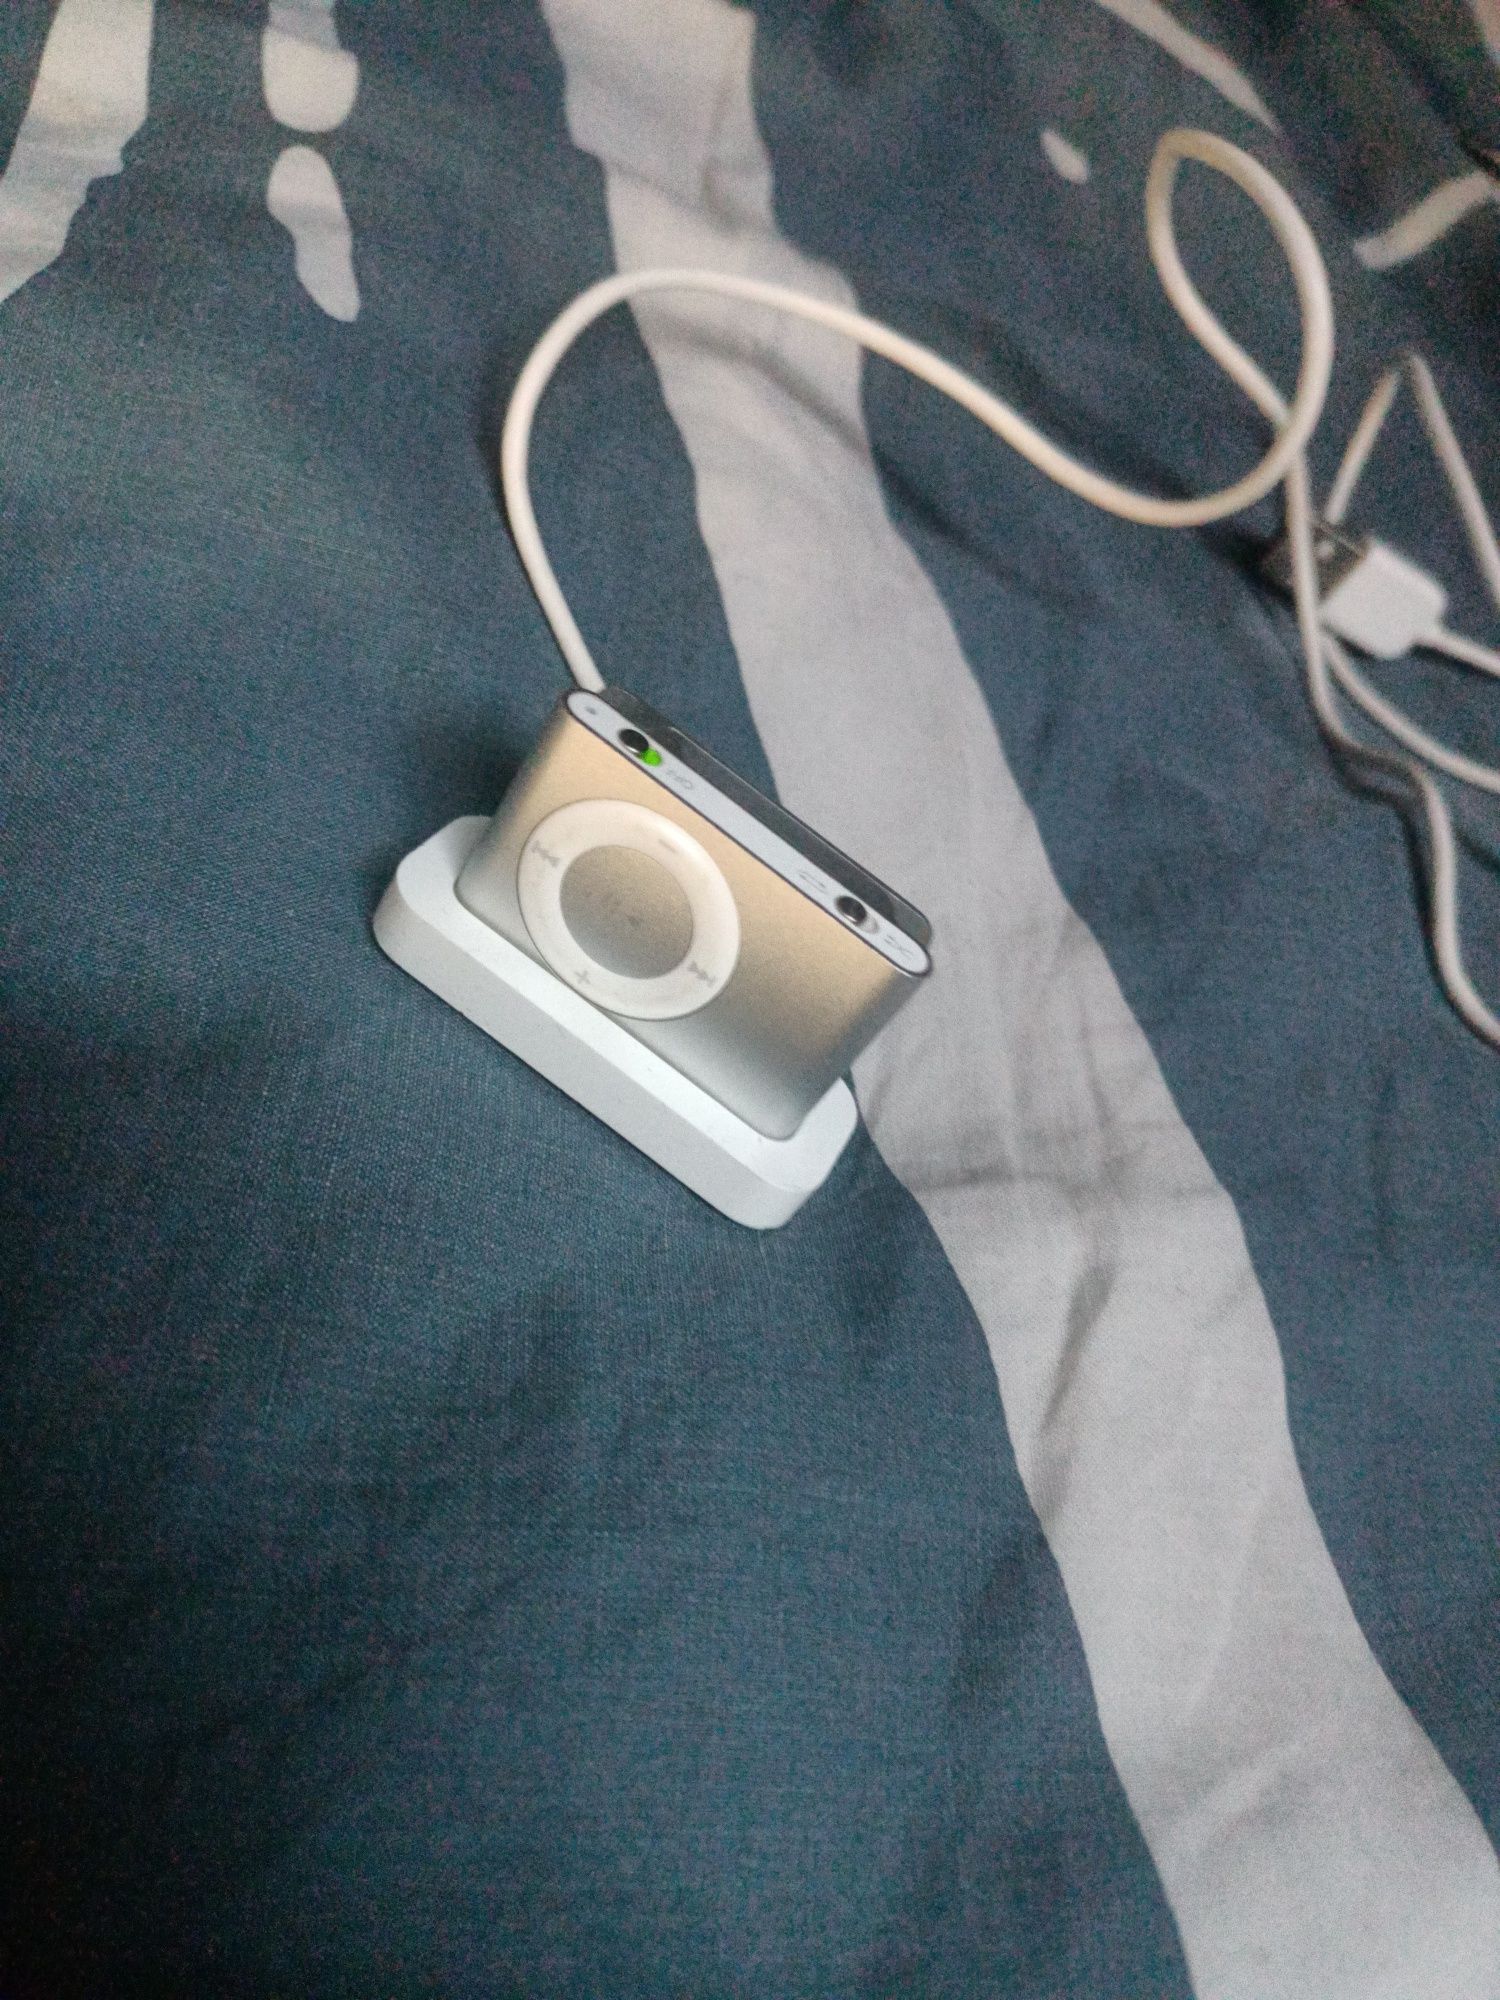 iPod którejś generacji